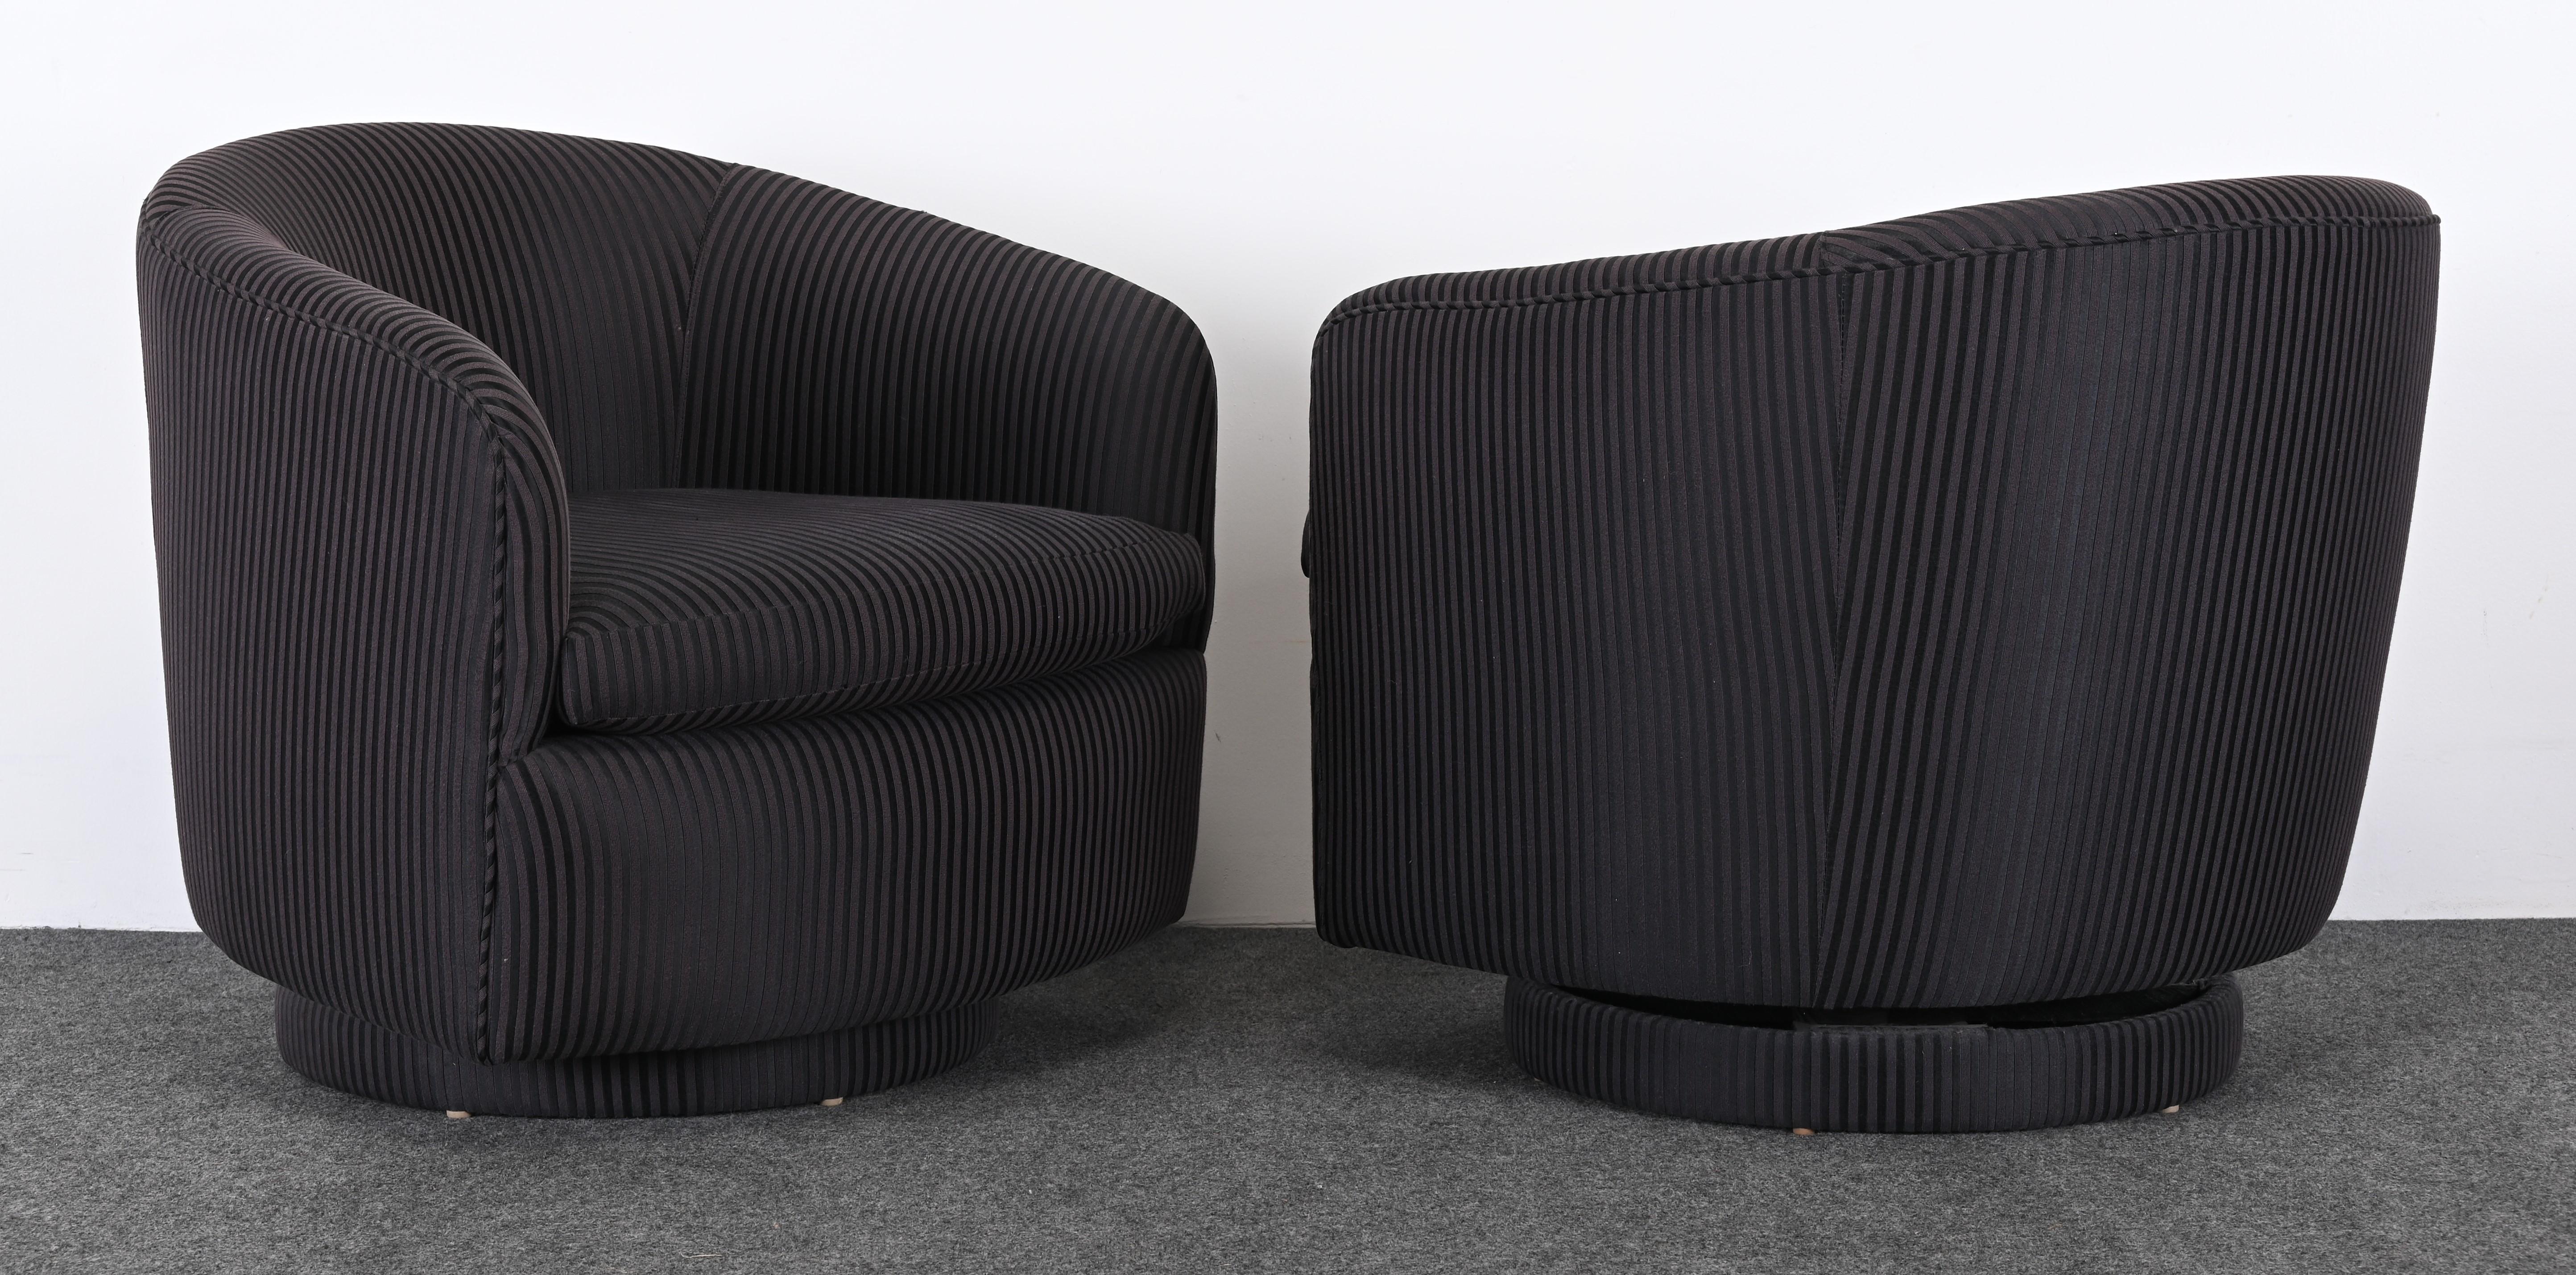 Paire de chaises pivotantes chic à rayures noires et grises par Milo Baughman pour Thayer, années 1990. Le tissu a été nouvellement tapissé il y a cinq ans par les propriétaires d'origine. Ces beaux fauteuils pivotants et rock sont très agréables et